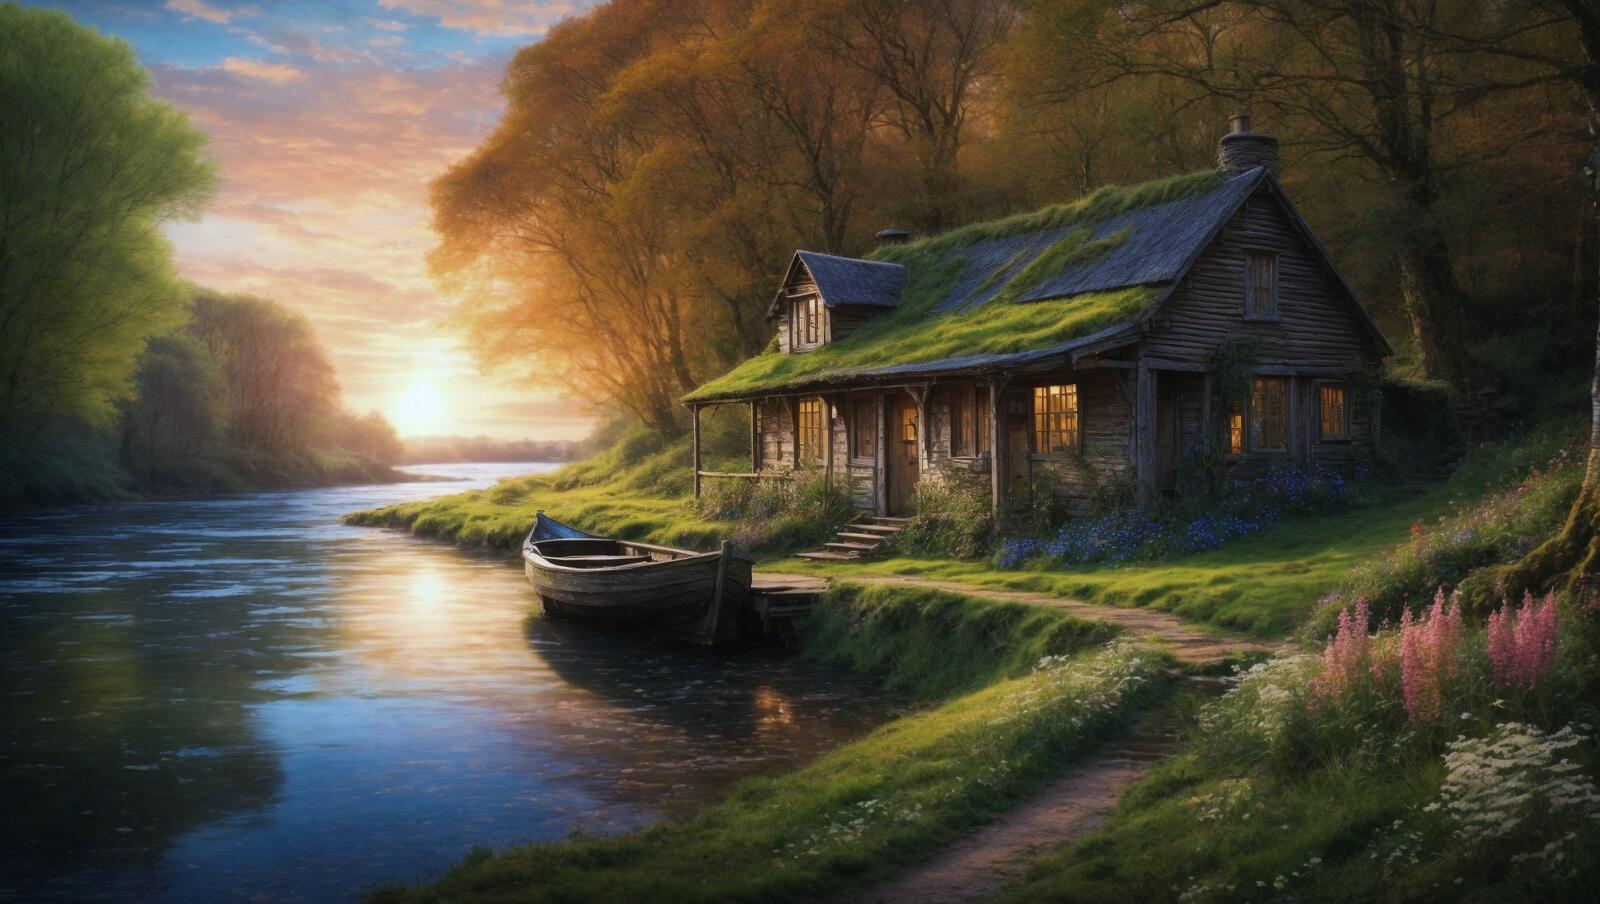 Бесплатное фото Картина с изображением лодки на берегу реки с хижиной на берегу, на которой находится освещенное солнцем озеро.